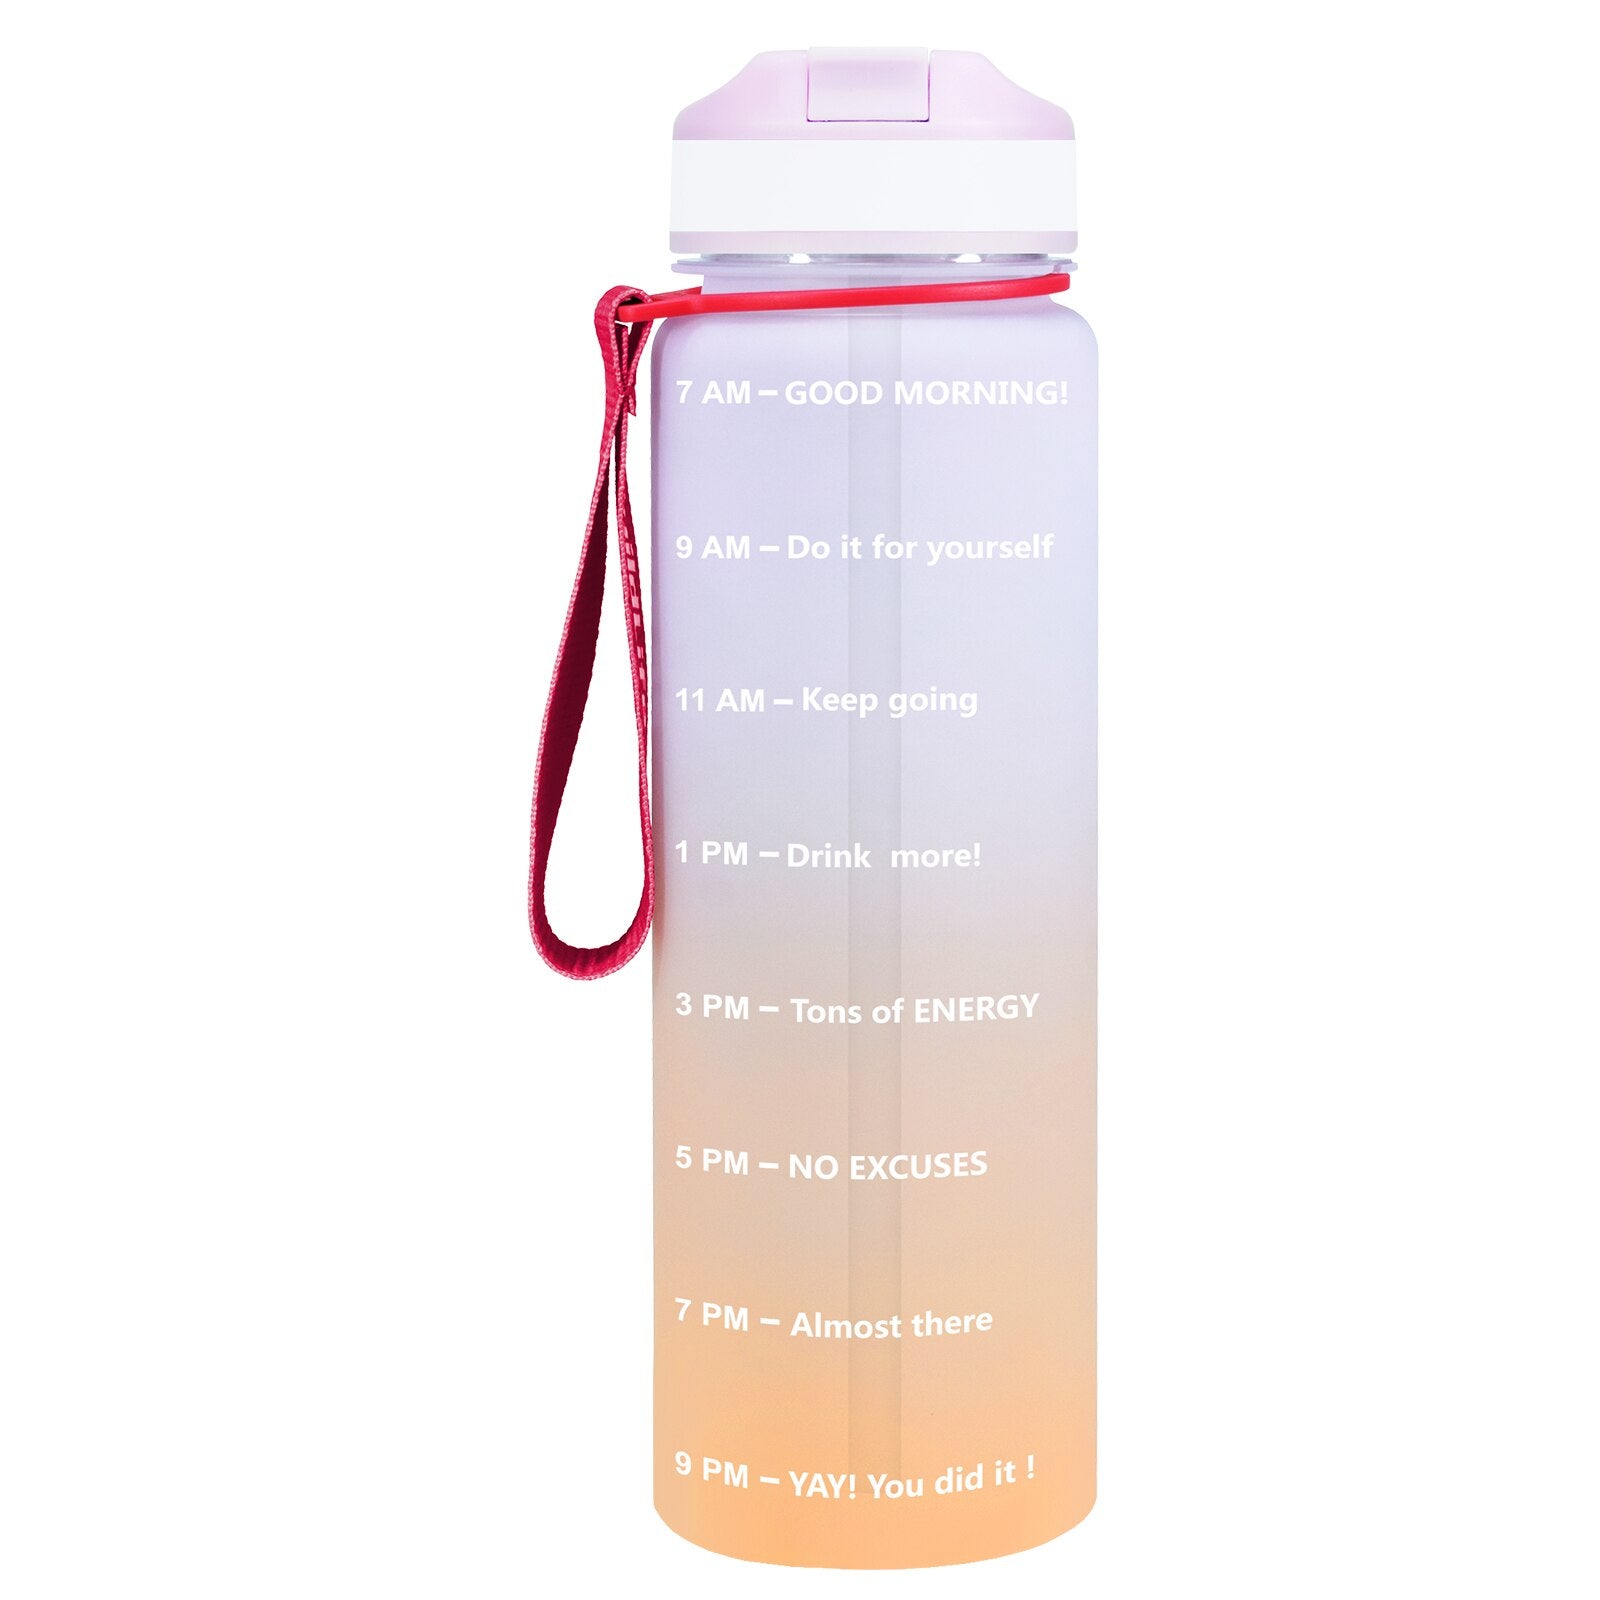 Eine pink-orange Sporttrinkflasche mit einer Zeitmarkierungen sowie motivierenden Spruechen für verschiedene Tageszeiten. Die Flasche hat eine rote Trageschlaufe und einen Deckel mit einem aufklappbaren Trinkverschluss.